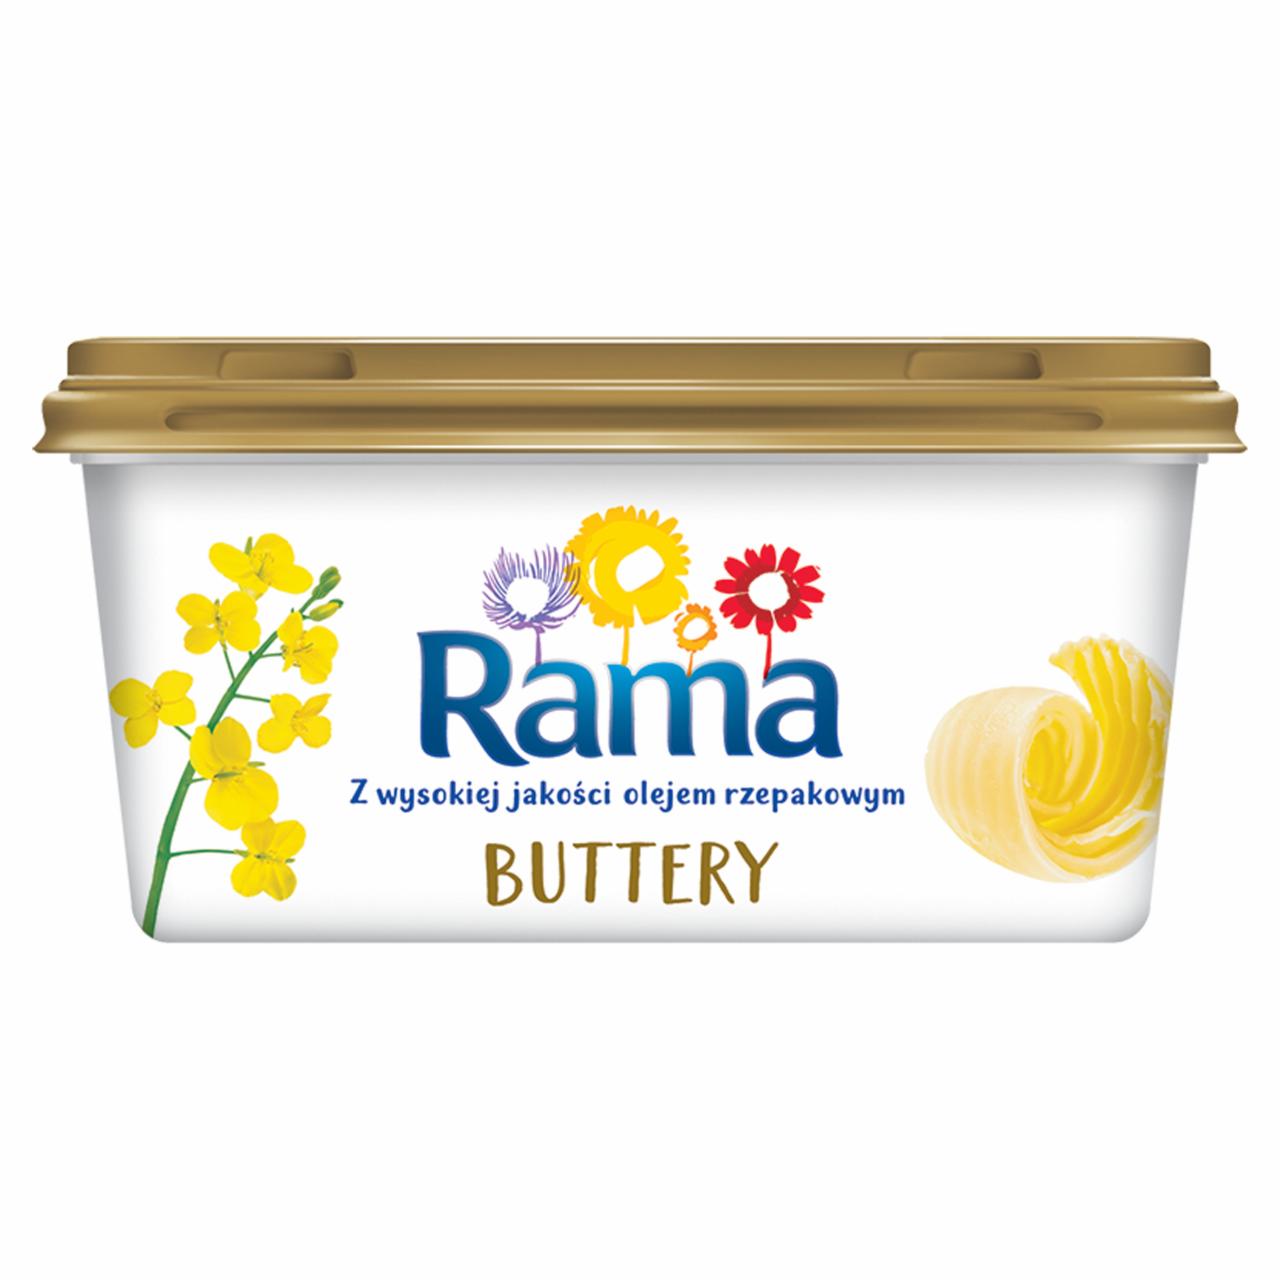 Zdjęcia - Rama Buttery Margaryna 450 g